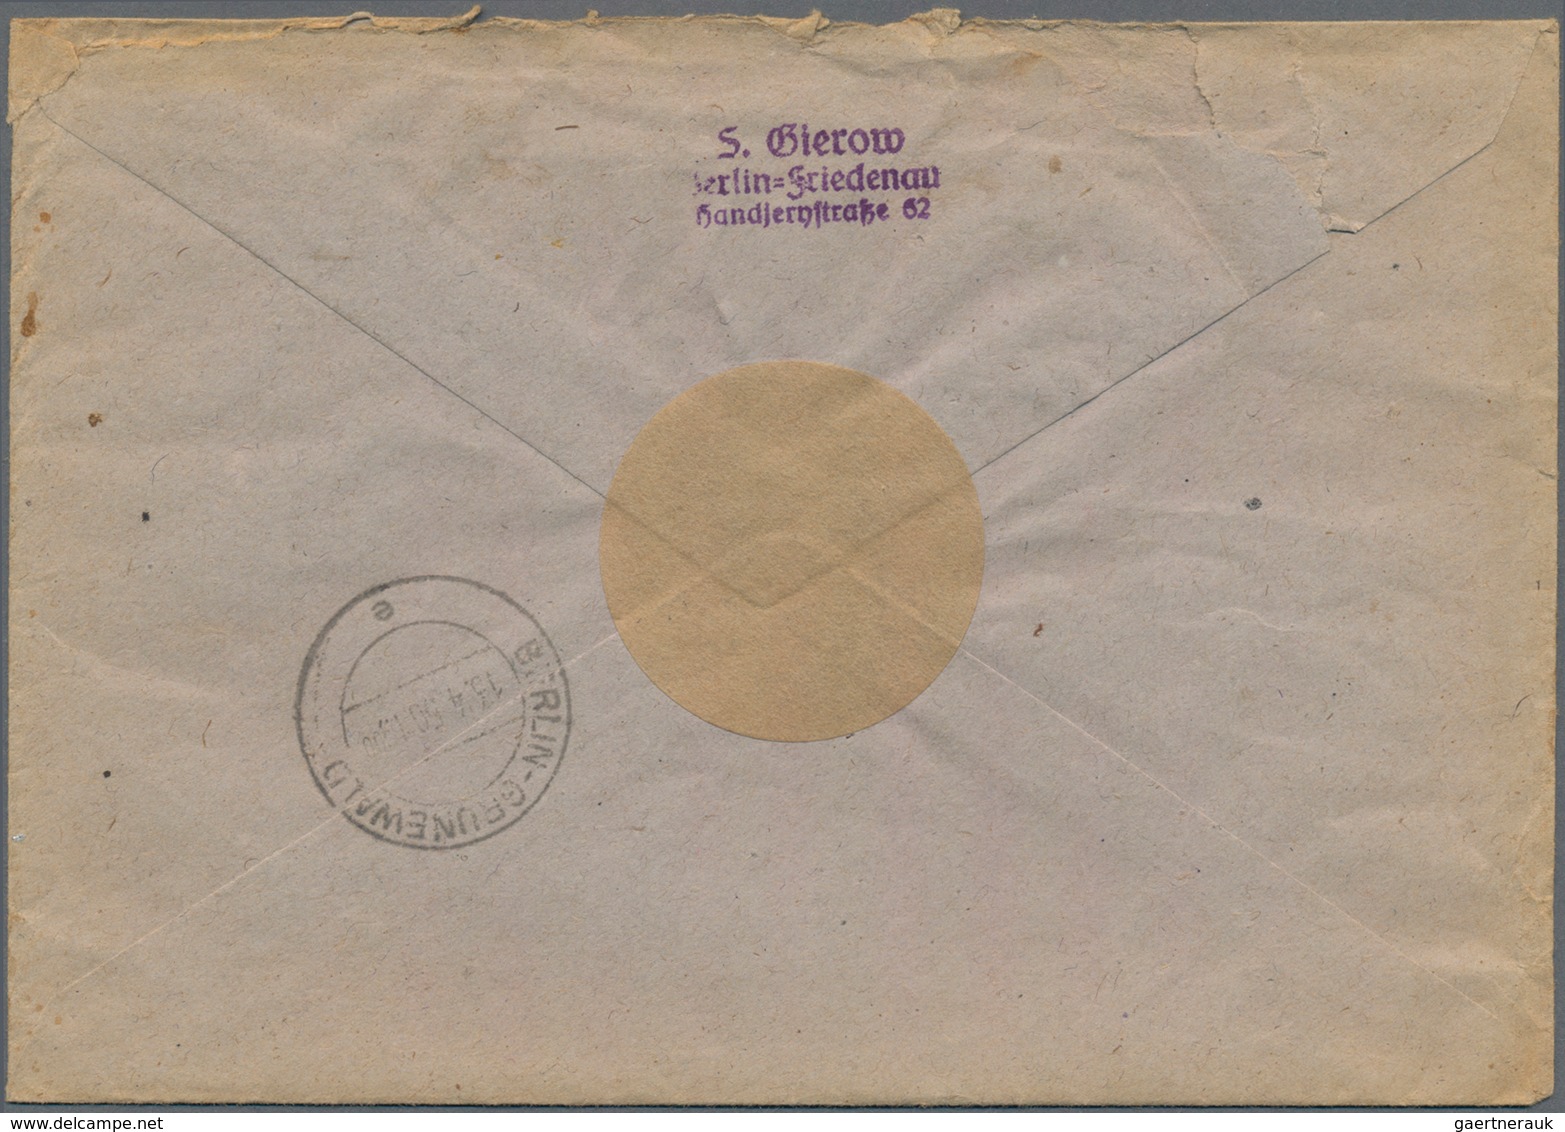 Berlin - Postschnelldienst: 1950, Ortsbrief Mit Postschnelldienst Frankiert Mit 2x10 Pfennig Grün Un - Briefe U. Dokumente